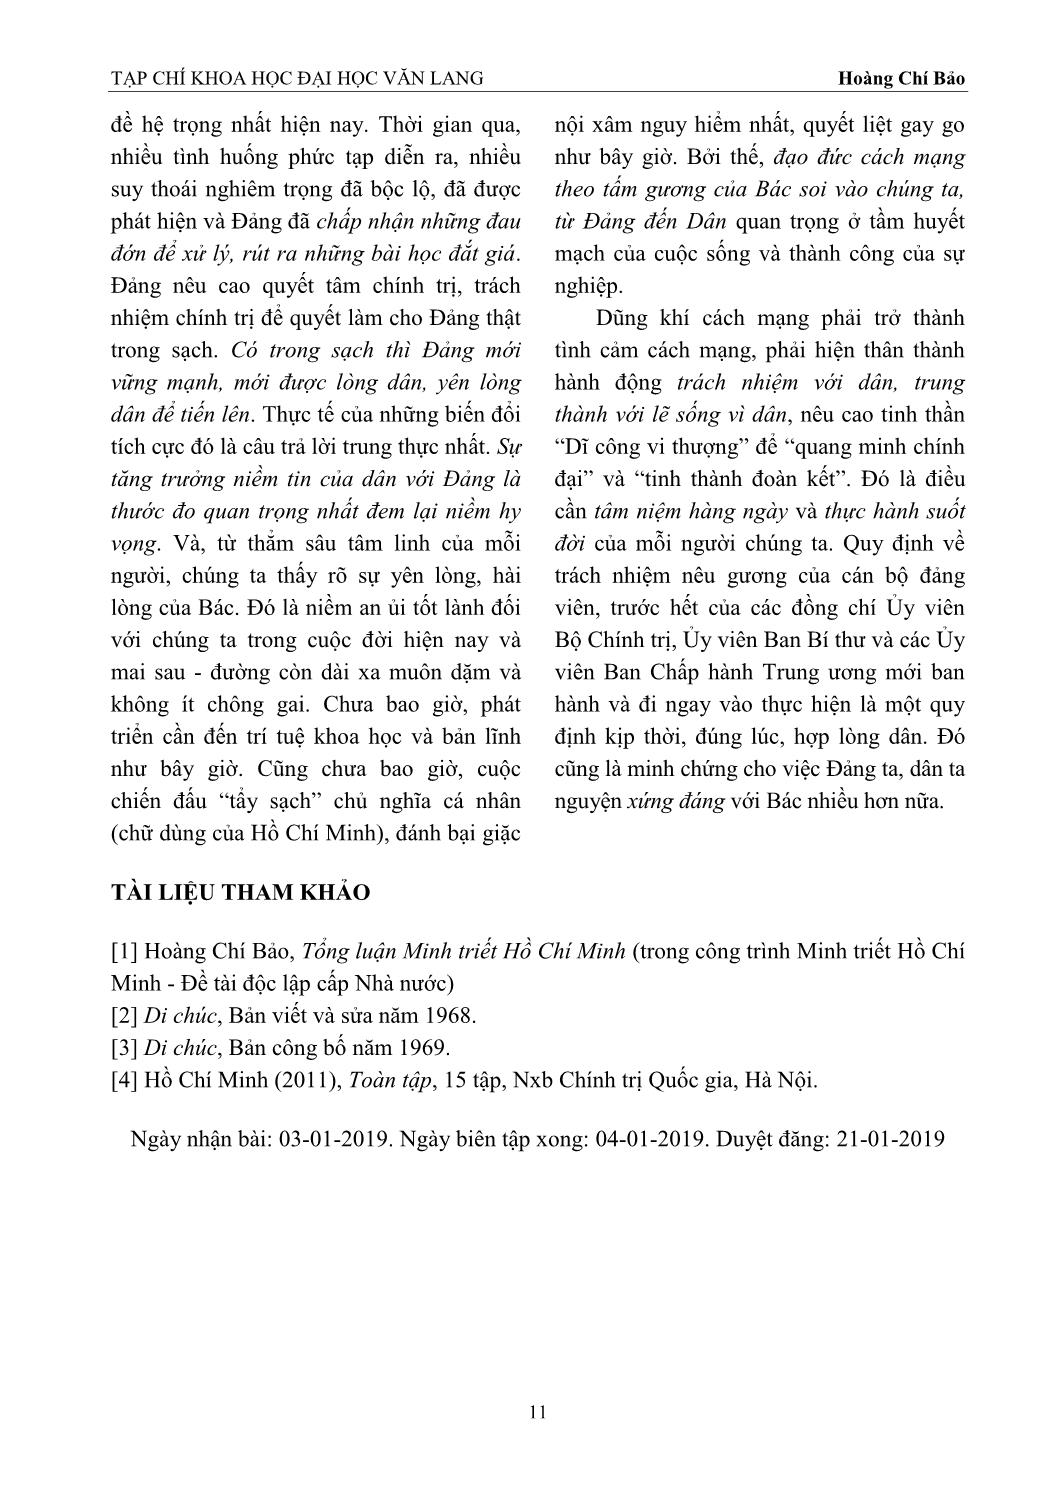 Di chúc chủ tịch Hồ Chí Minh - Quốc bảo và Pháp bảo của chúng ta trang 7